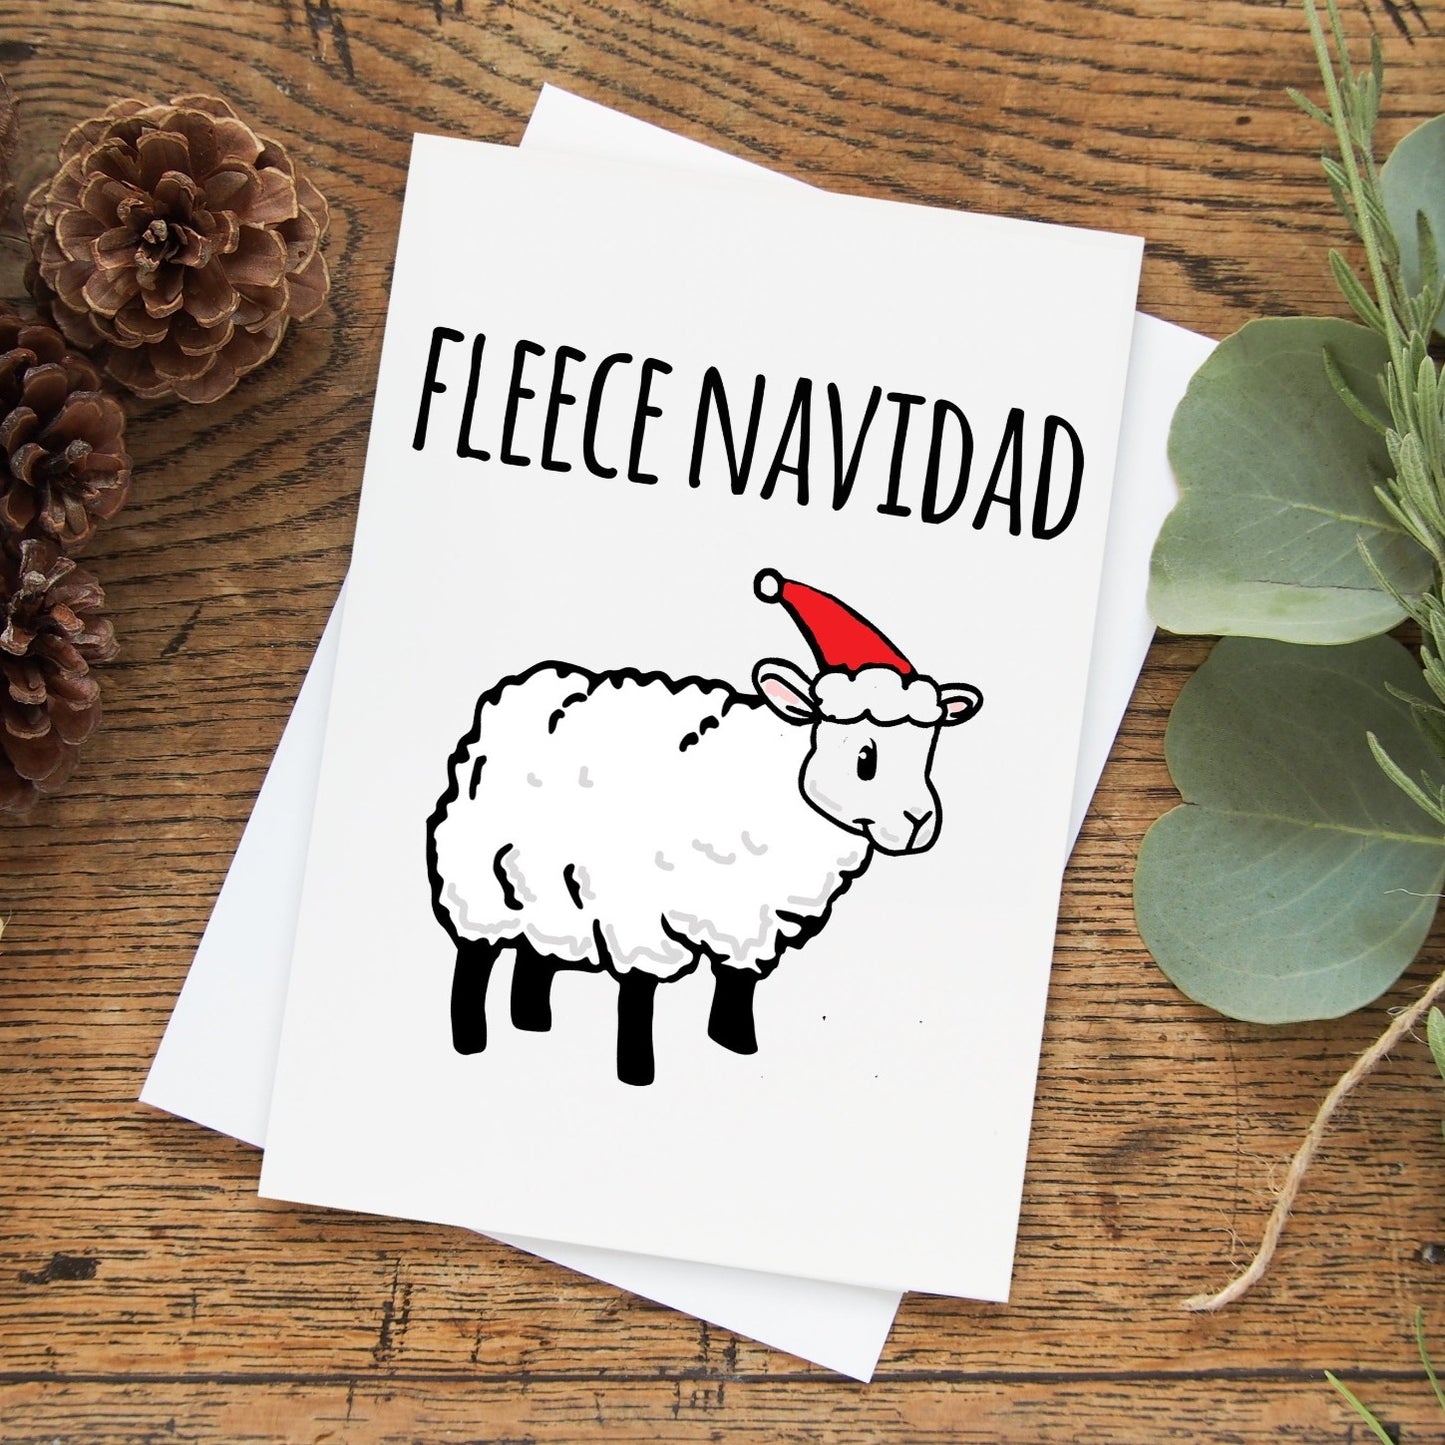 Fleece Navidad - Holiday Greeting Card